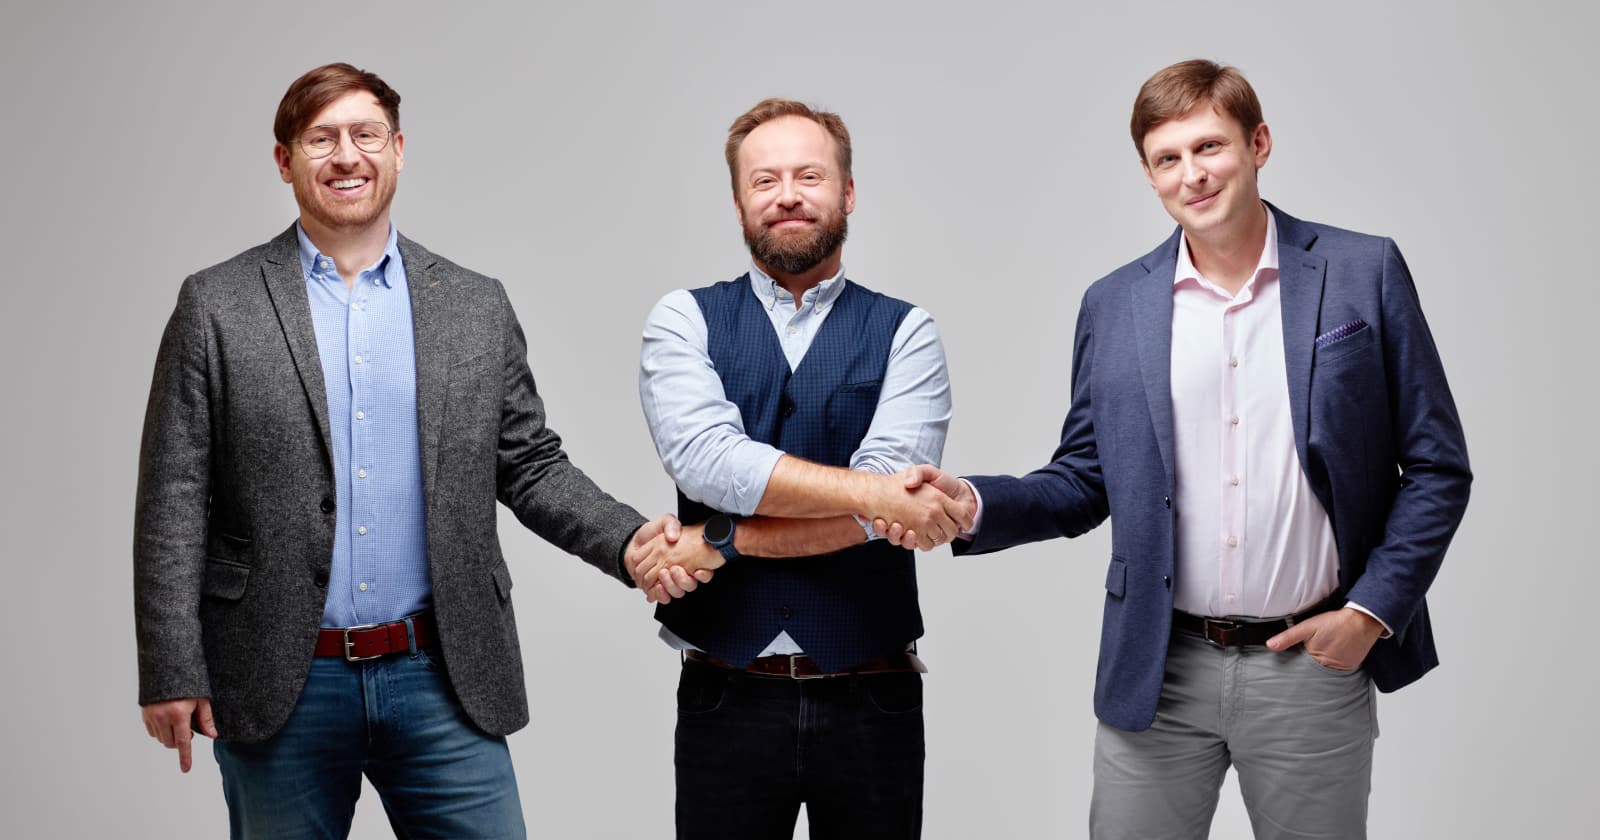 Na zdjęciu od lewej: Michał Skurowski (CEO), Marcin Zaremba (Head of Product), Marcin Stańczak (COO) Na zdjęciu od lewej: Michał Skurowski (CEO), Marcin Zaremba (Head of Product), Marcin Stańczak (COO)